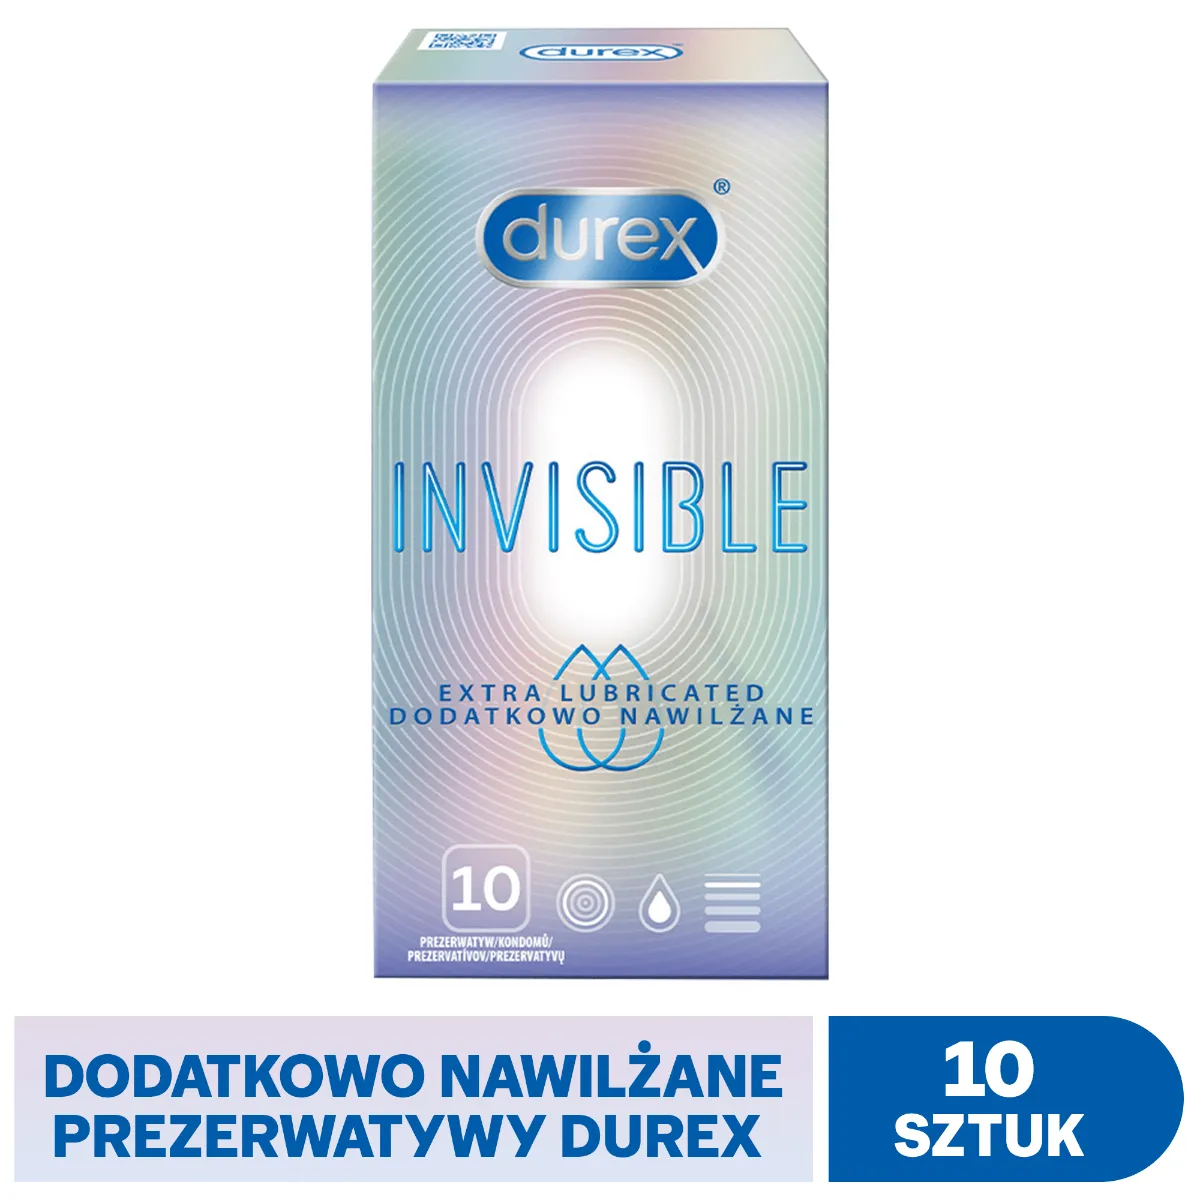 Durex Invisible, prezerwatywy extra nawilżane, 10 sztuk